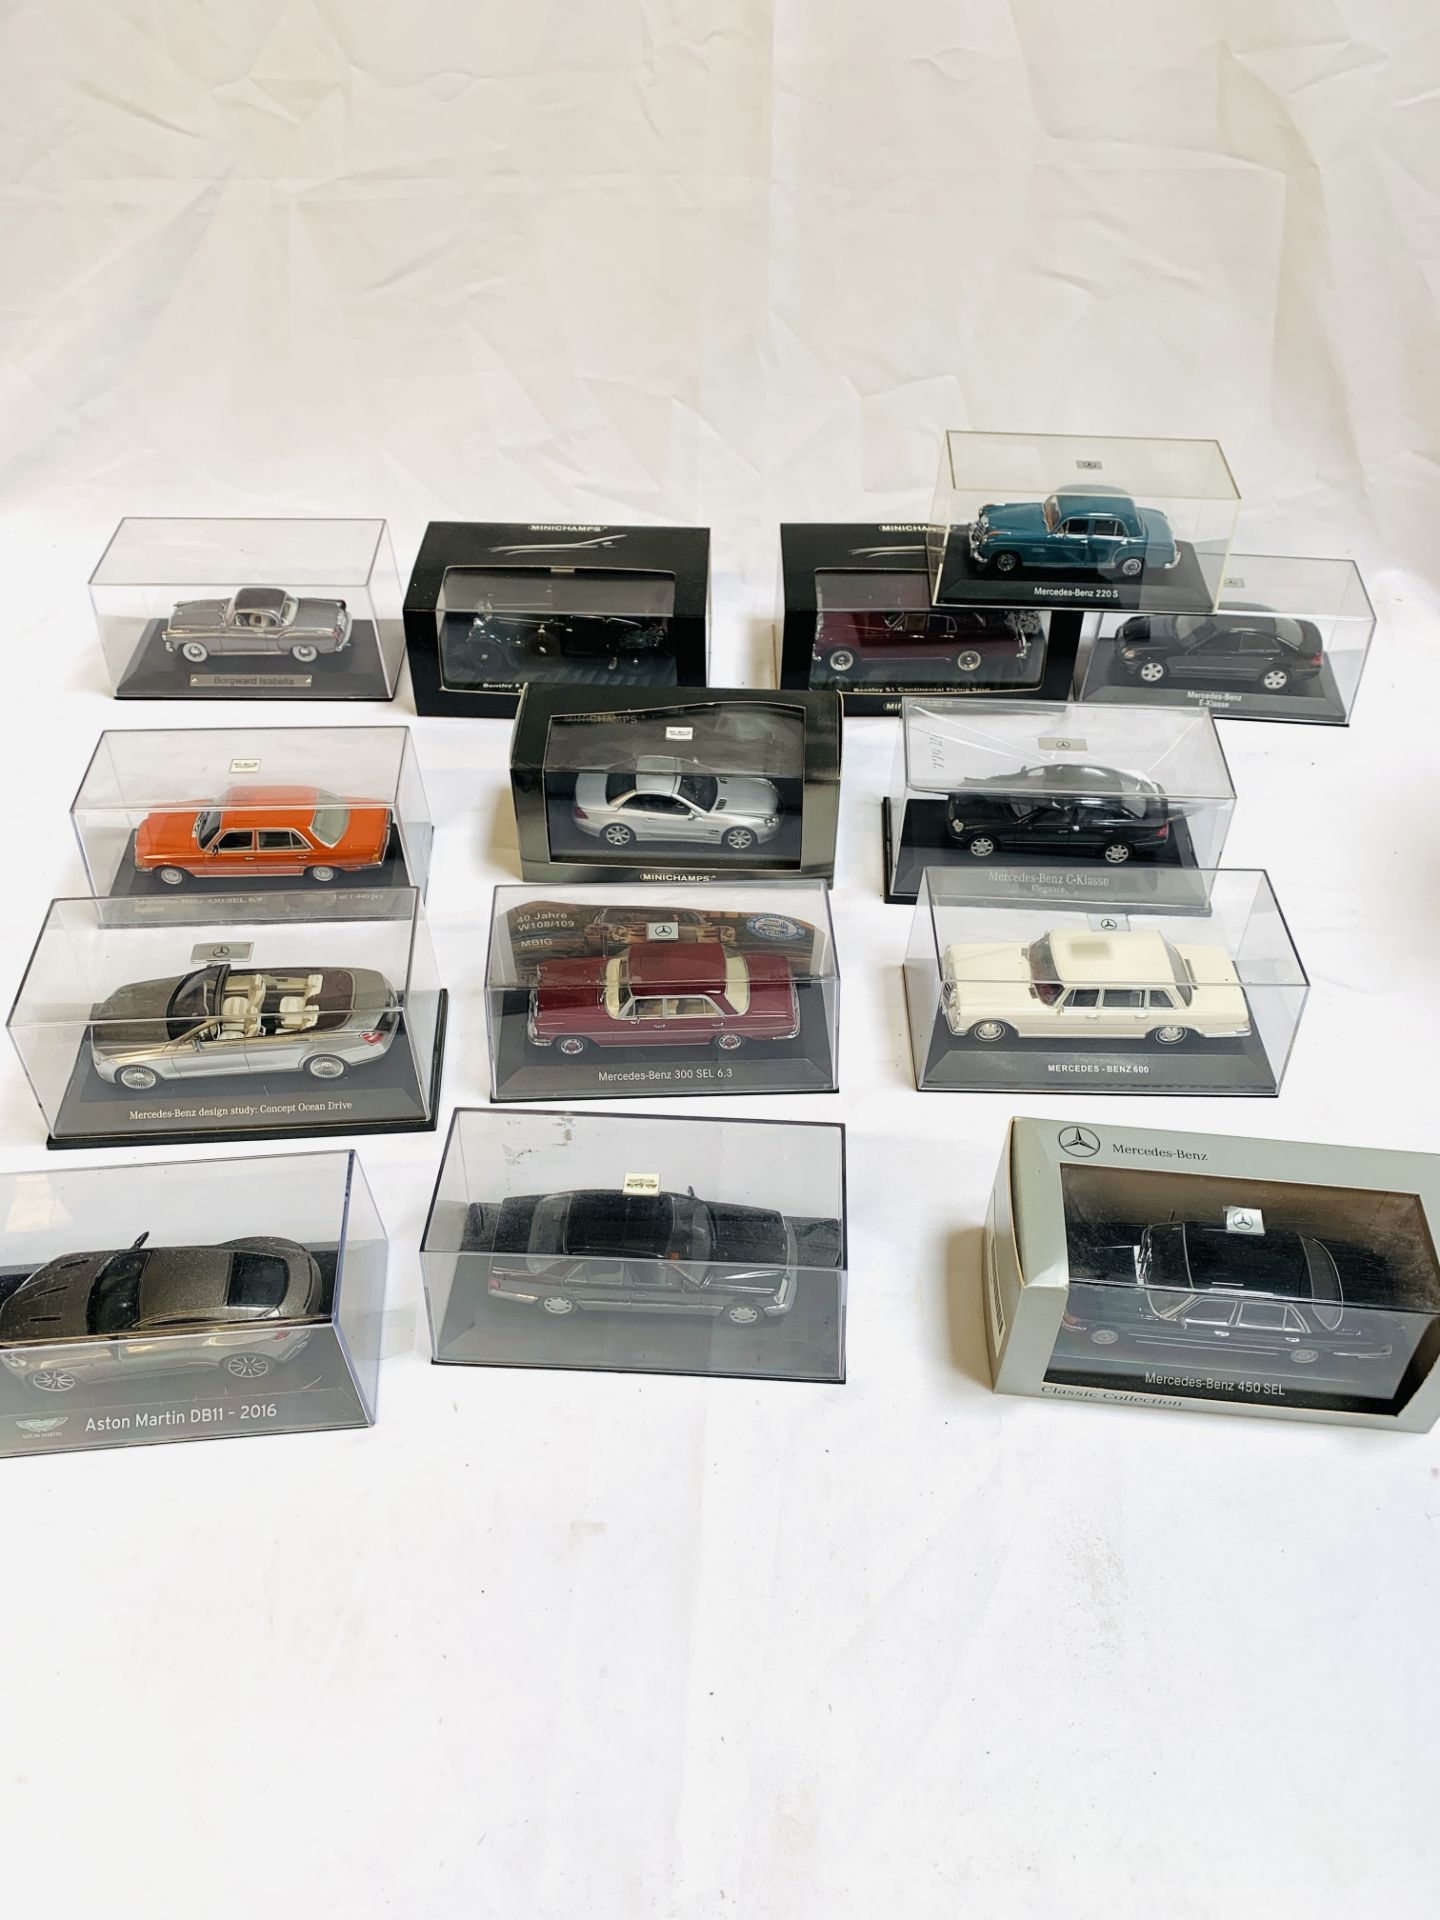 Fourteen diecast model cars